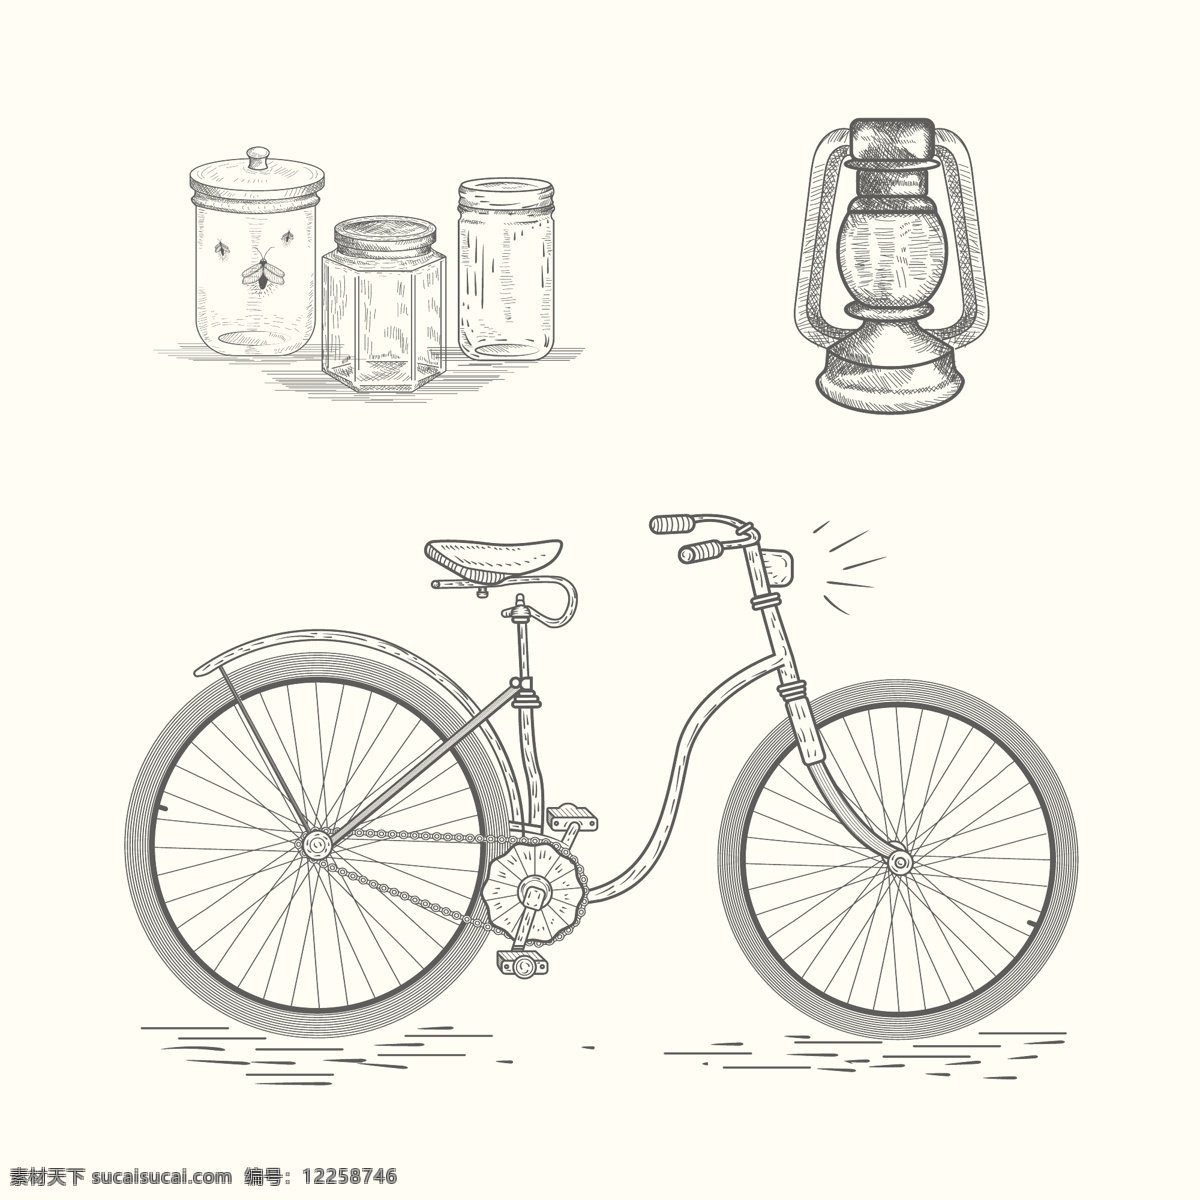 手工 绘制 元素 手 运动 健身 手绘 健康 涂鸦 自行车 素描 绘画 交通 链 训练 生活 骑自行车